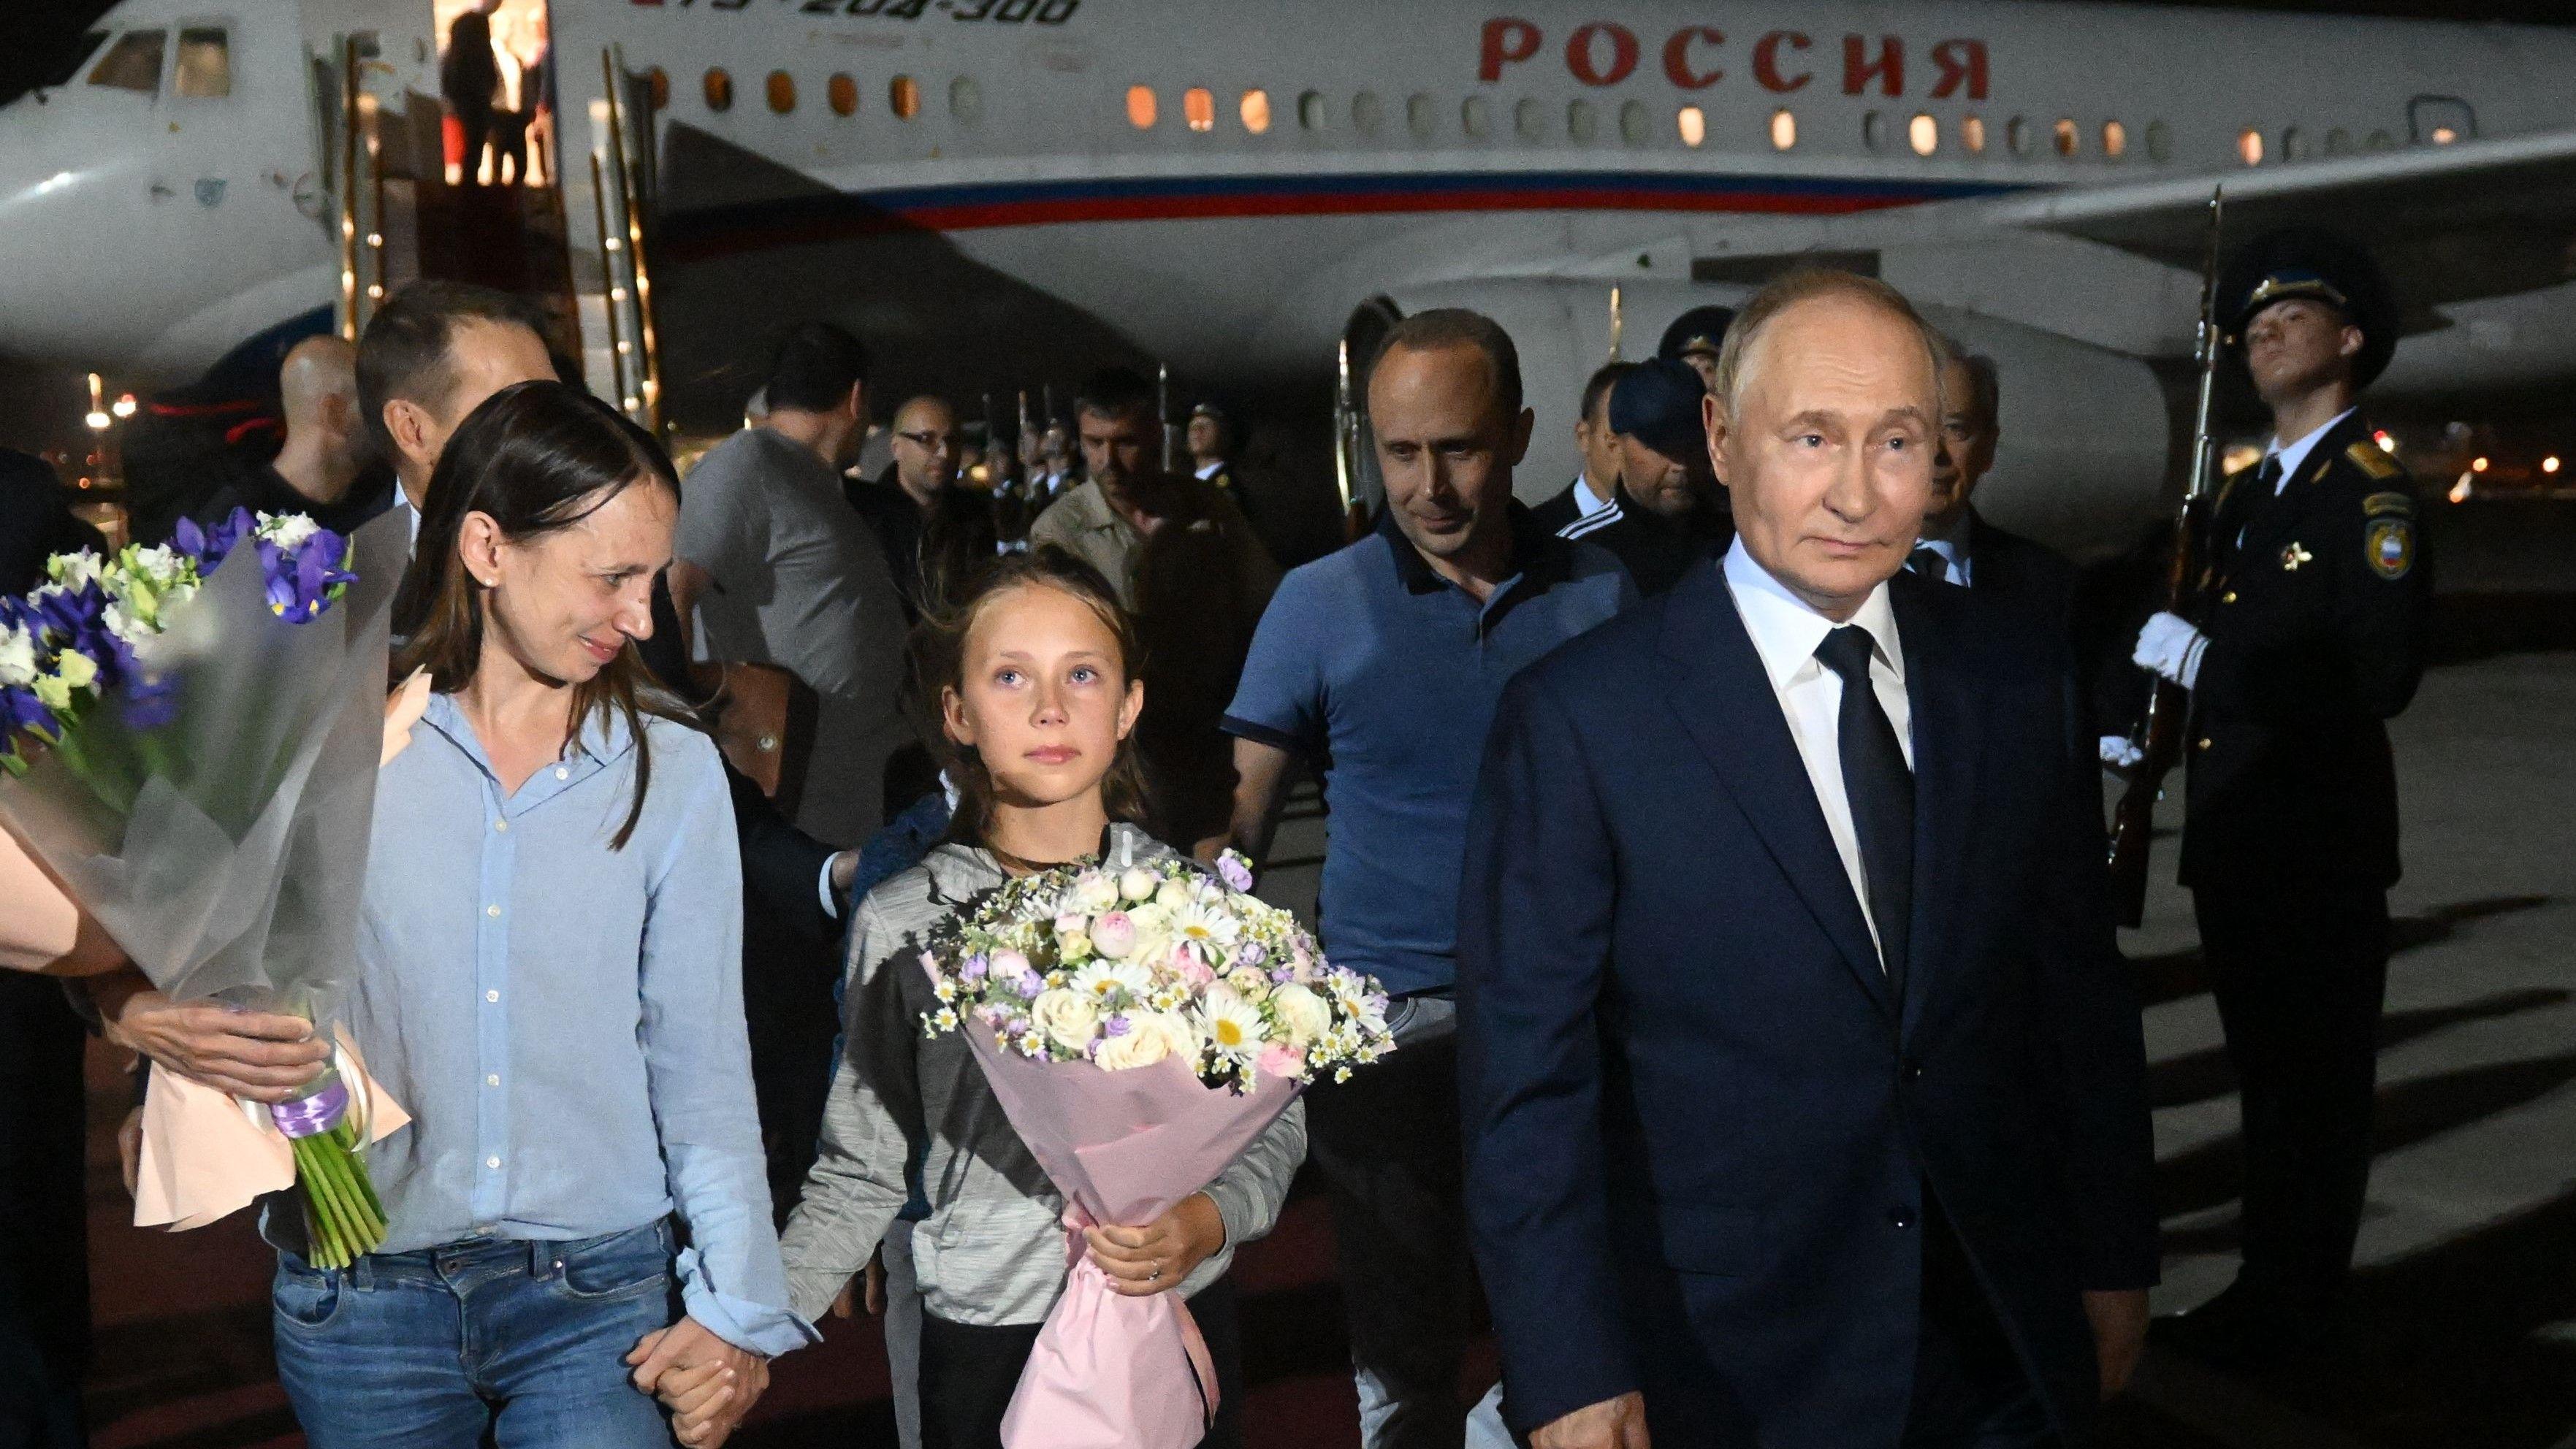 Why Putin thinks he's the winner in prisoner swap